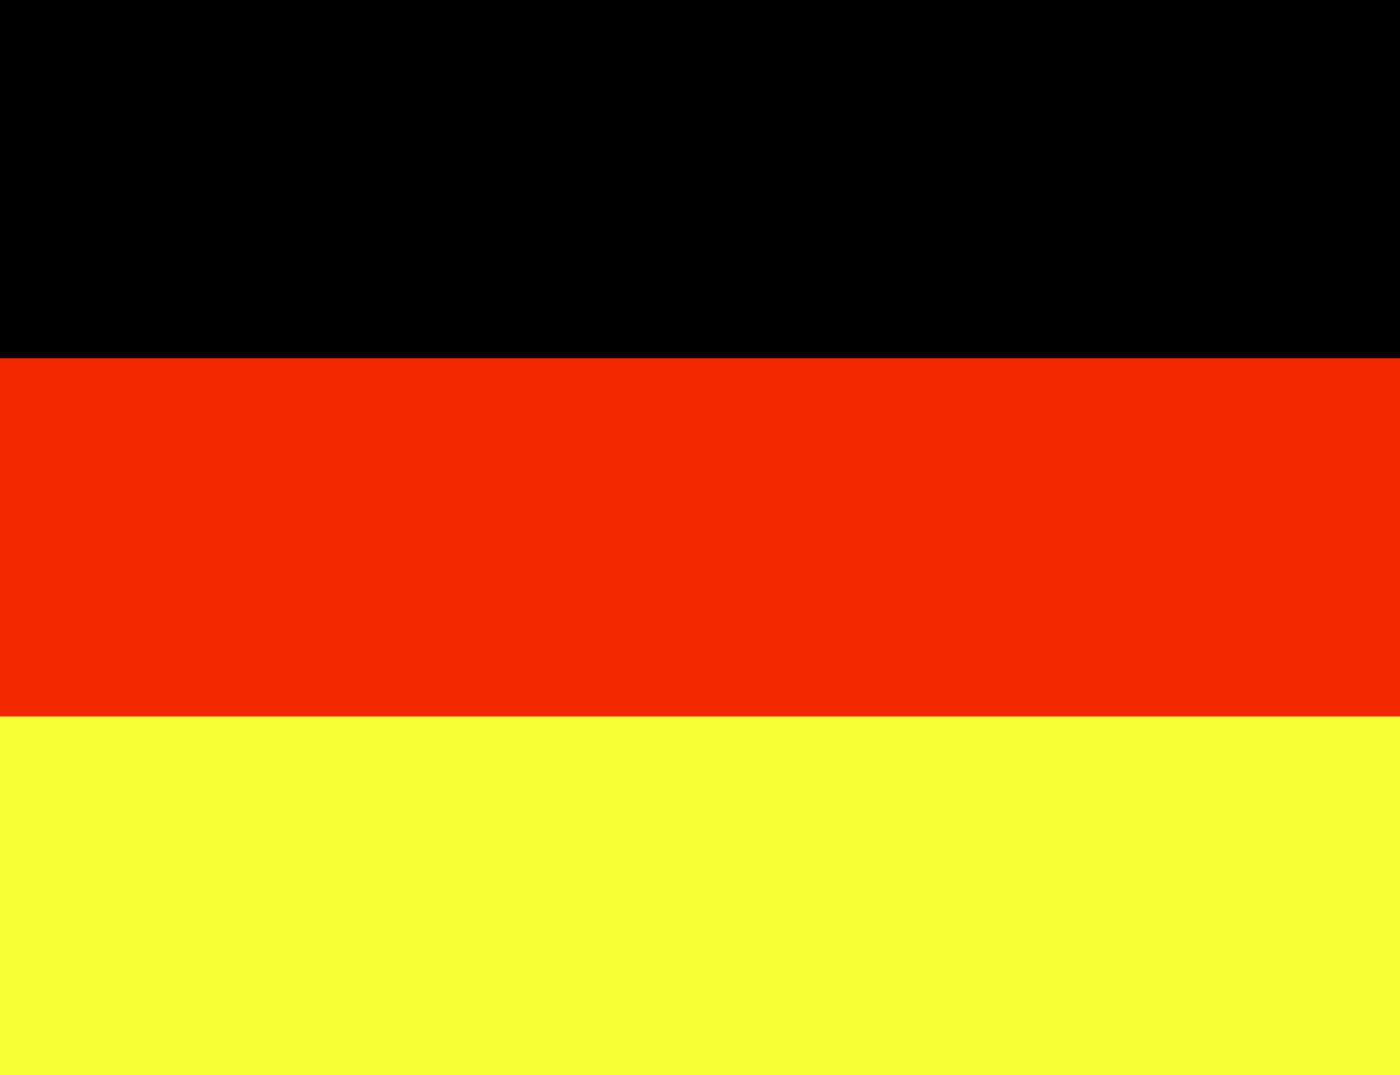 http://3.bp.blogspot.com/-zufOseCOI74/TE2X2X5PY0I/AAAAAAAABlc/alstfOFCK6k/s1600/germany-flag.jpg